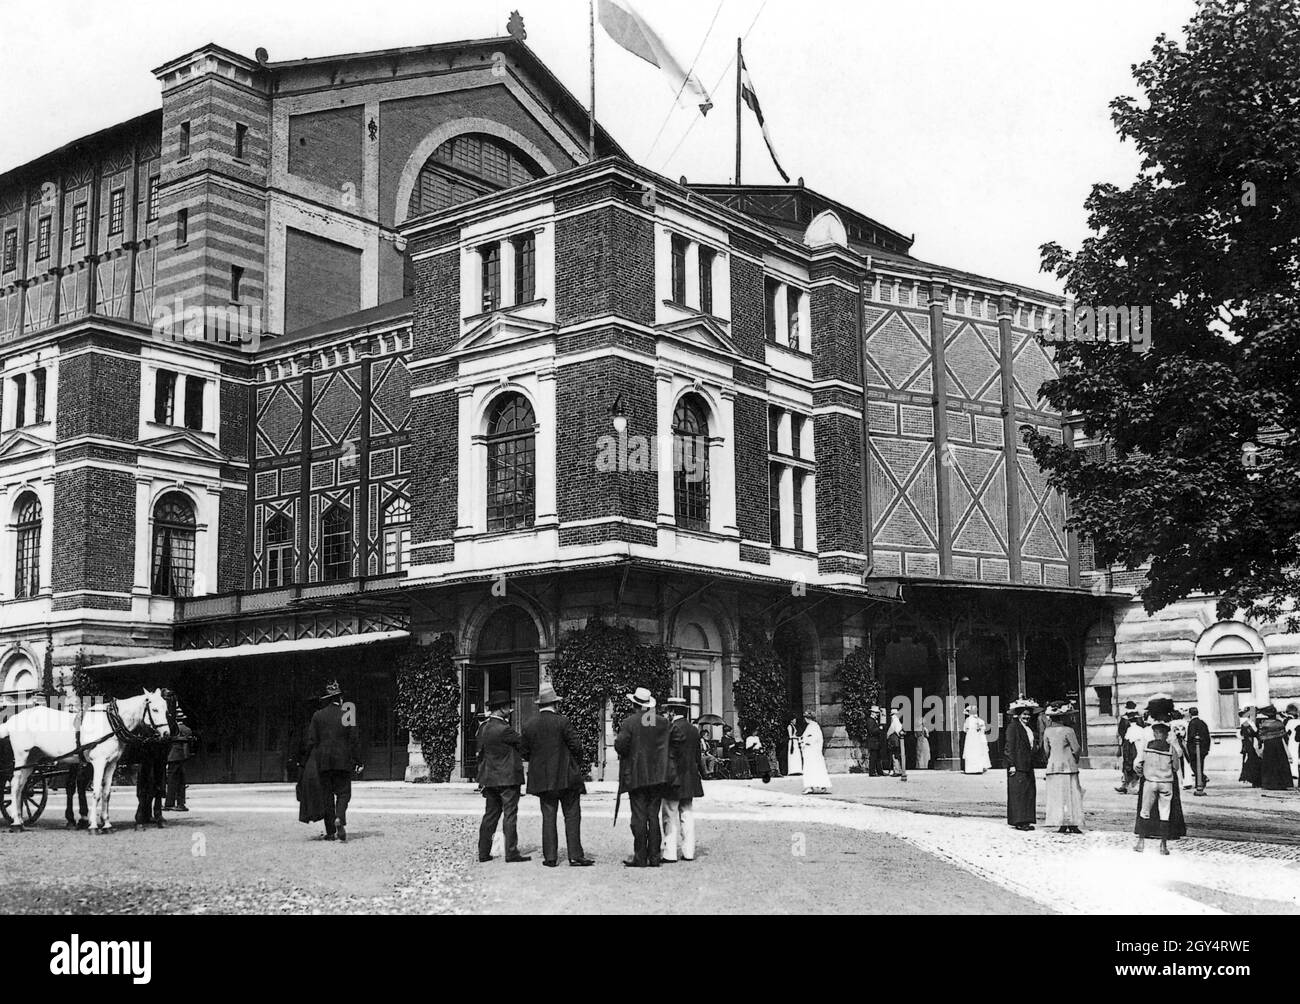 Dieses Foto zeigt das Richard Wagner Festspieltheater in Bayreuth im Jahr 1912, mit einer High Society, die sich westlich des Haupteingangs versammelt, vermutlich für eine Opernaufführung bei den Bayreuther Festspielen. [Automatisierte Übersetzung] Stockfoto